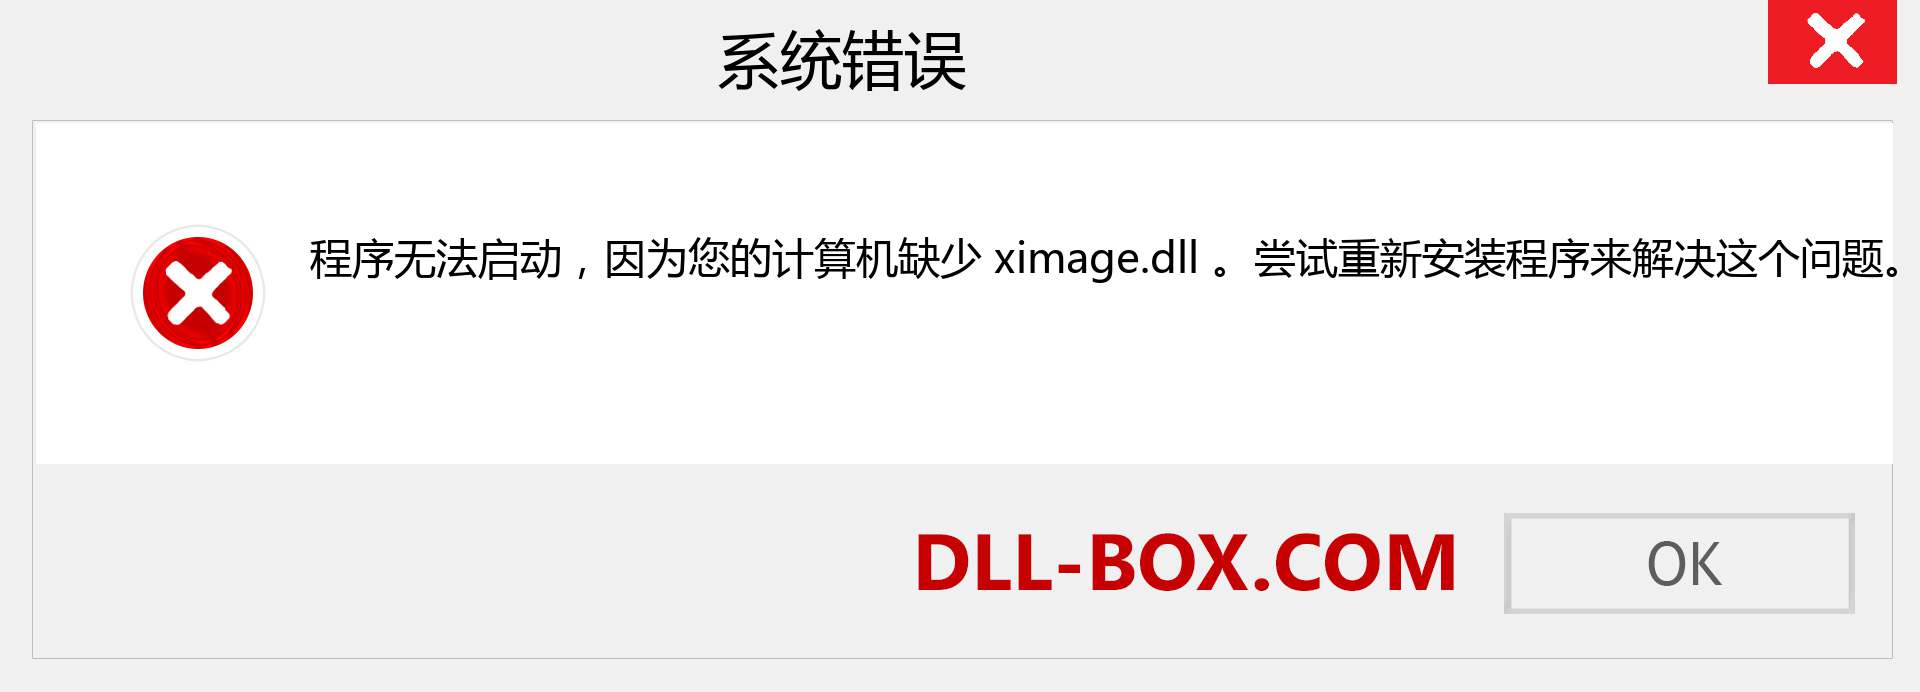 ximage.dll 文件丢失？。 适用于 Windows 7、8、10 的下载 - 修复 Windows、照片、图像上的 ximage dll 丢失错误